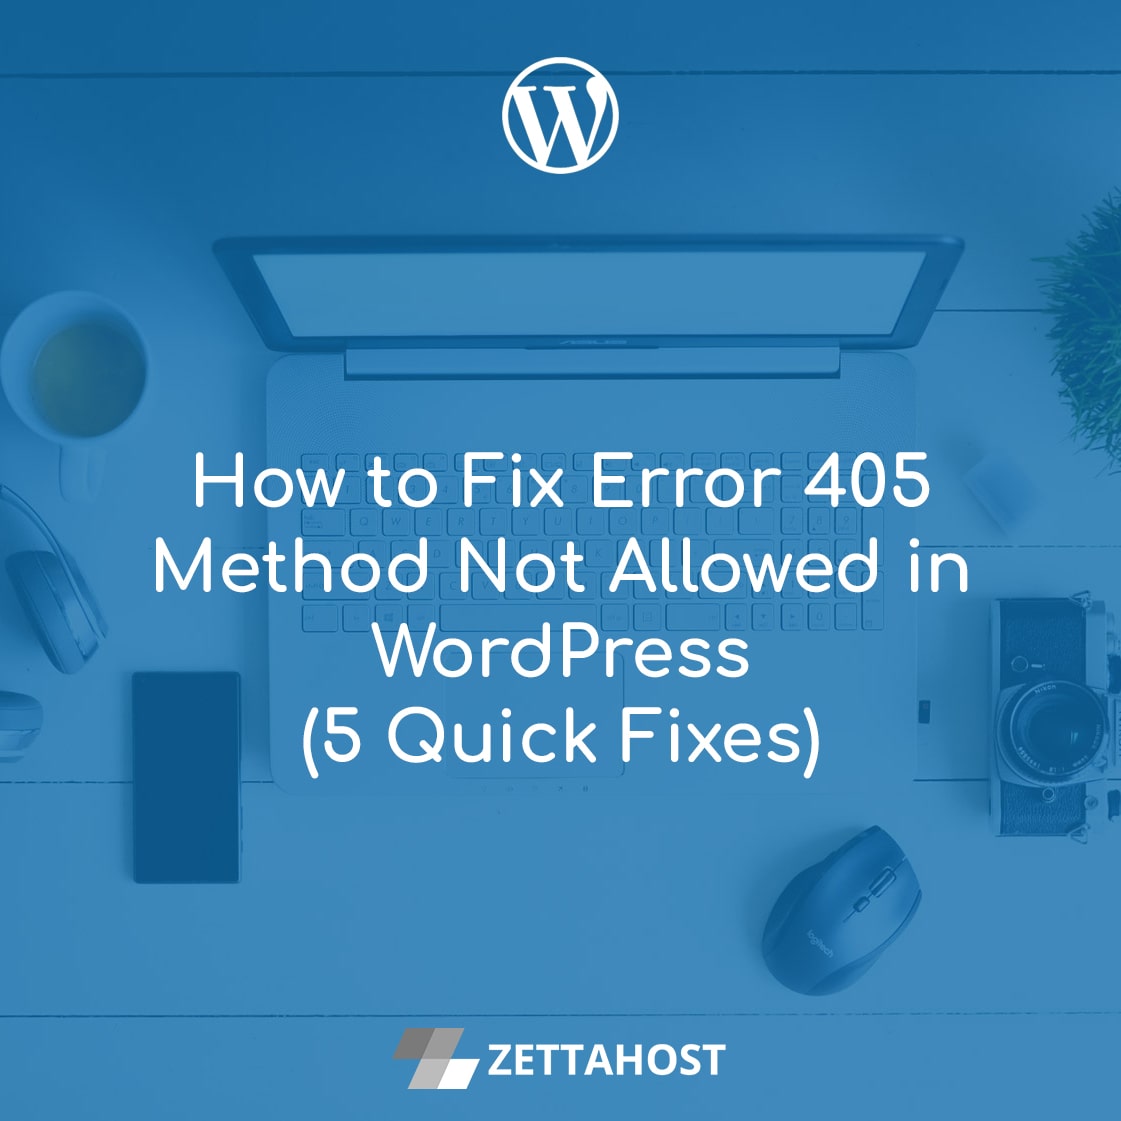 How to Fix Error 405 Method Not Allowed in WordPress (5 Quick Fixes